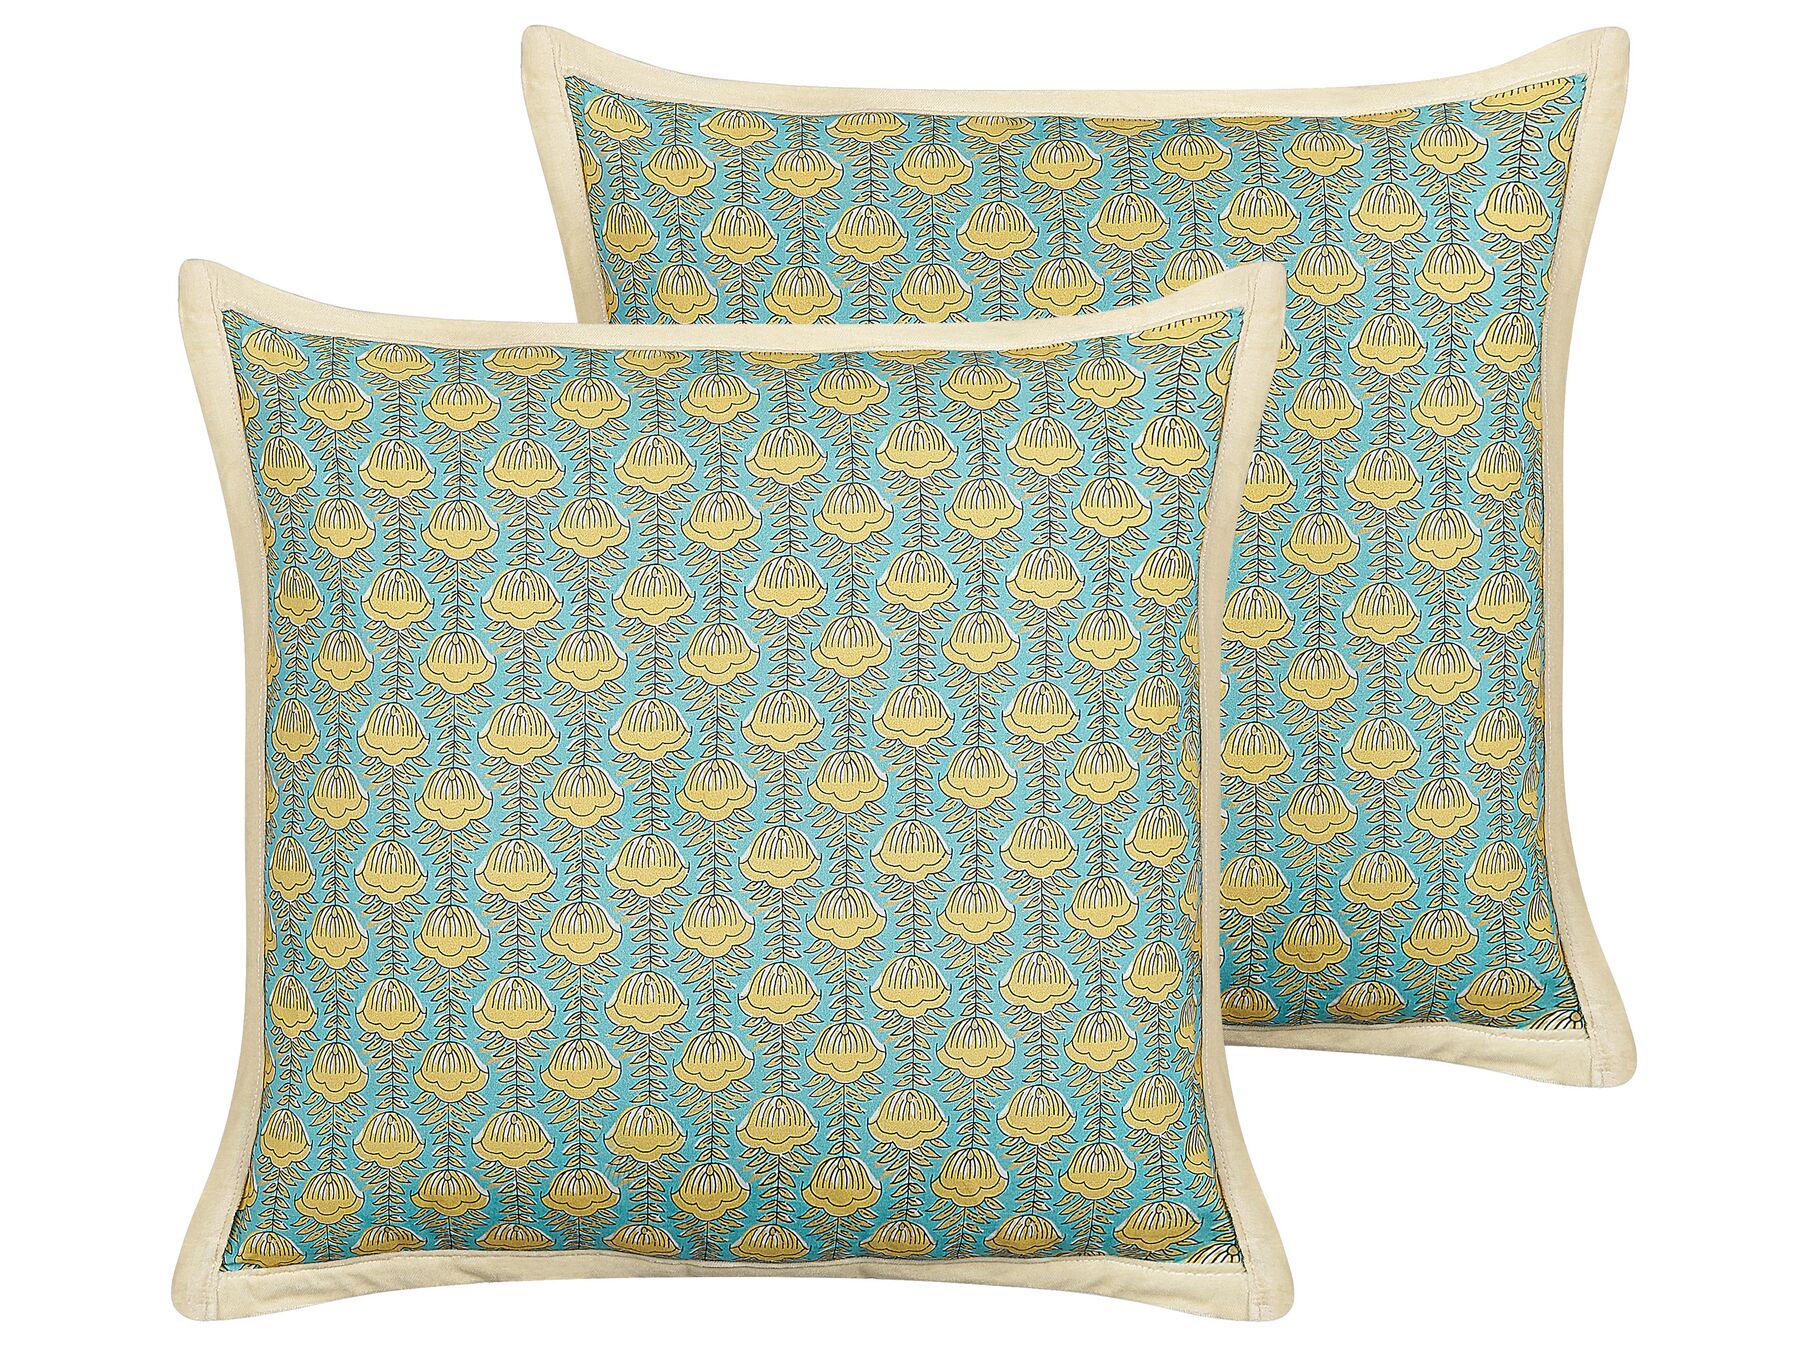 Sada 2 bavlněných polštářů květinový vzor 45 x 45 cm modré/ žluté WAKEGI_838909